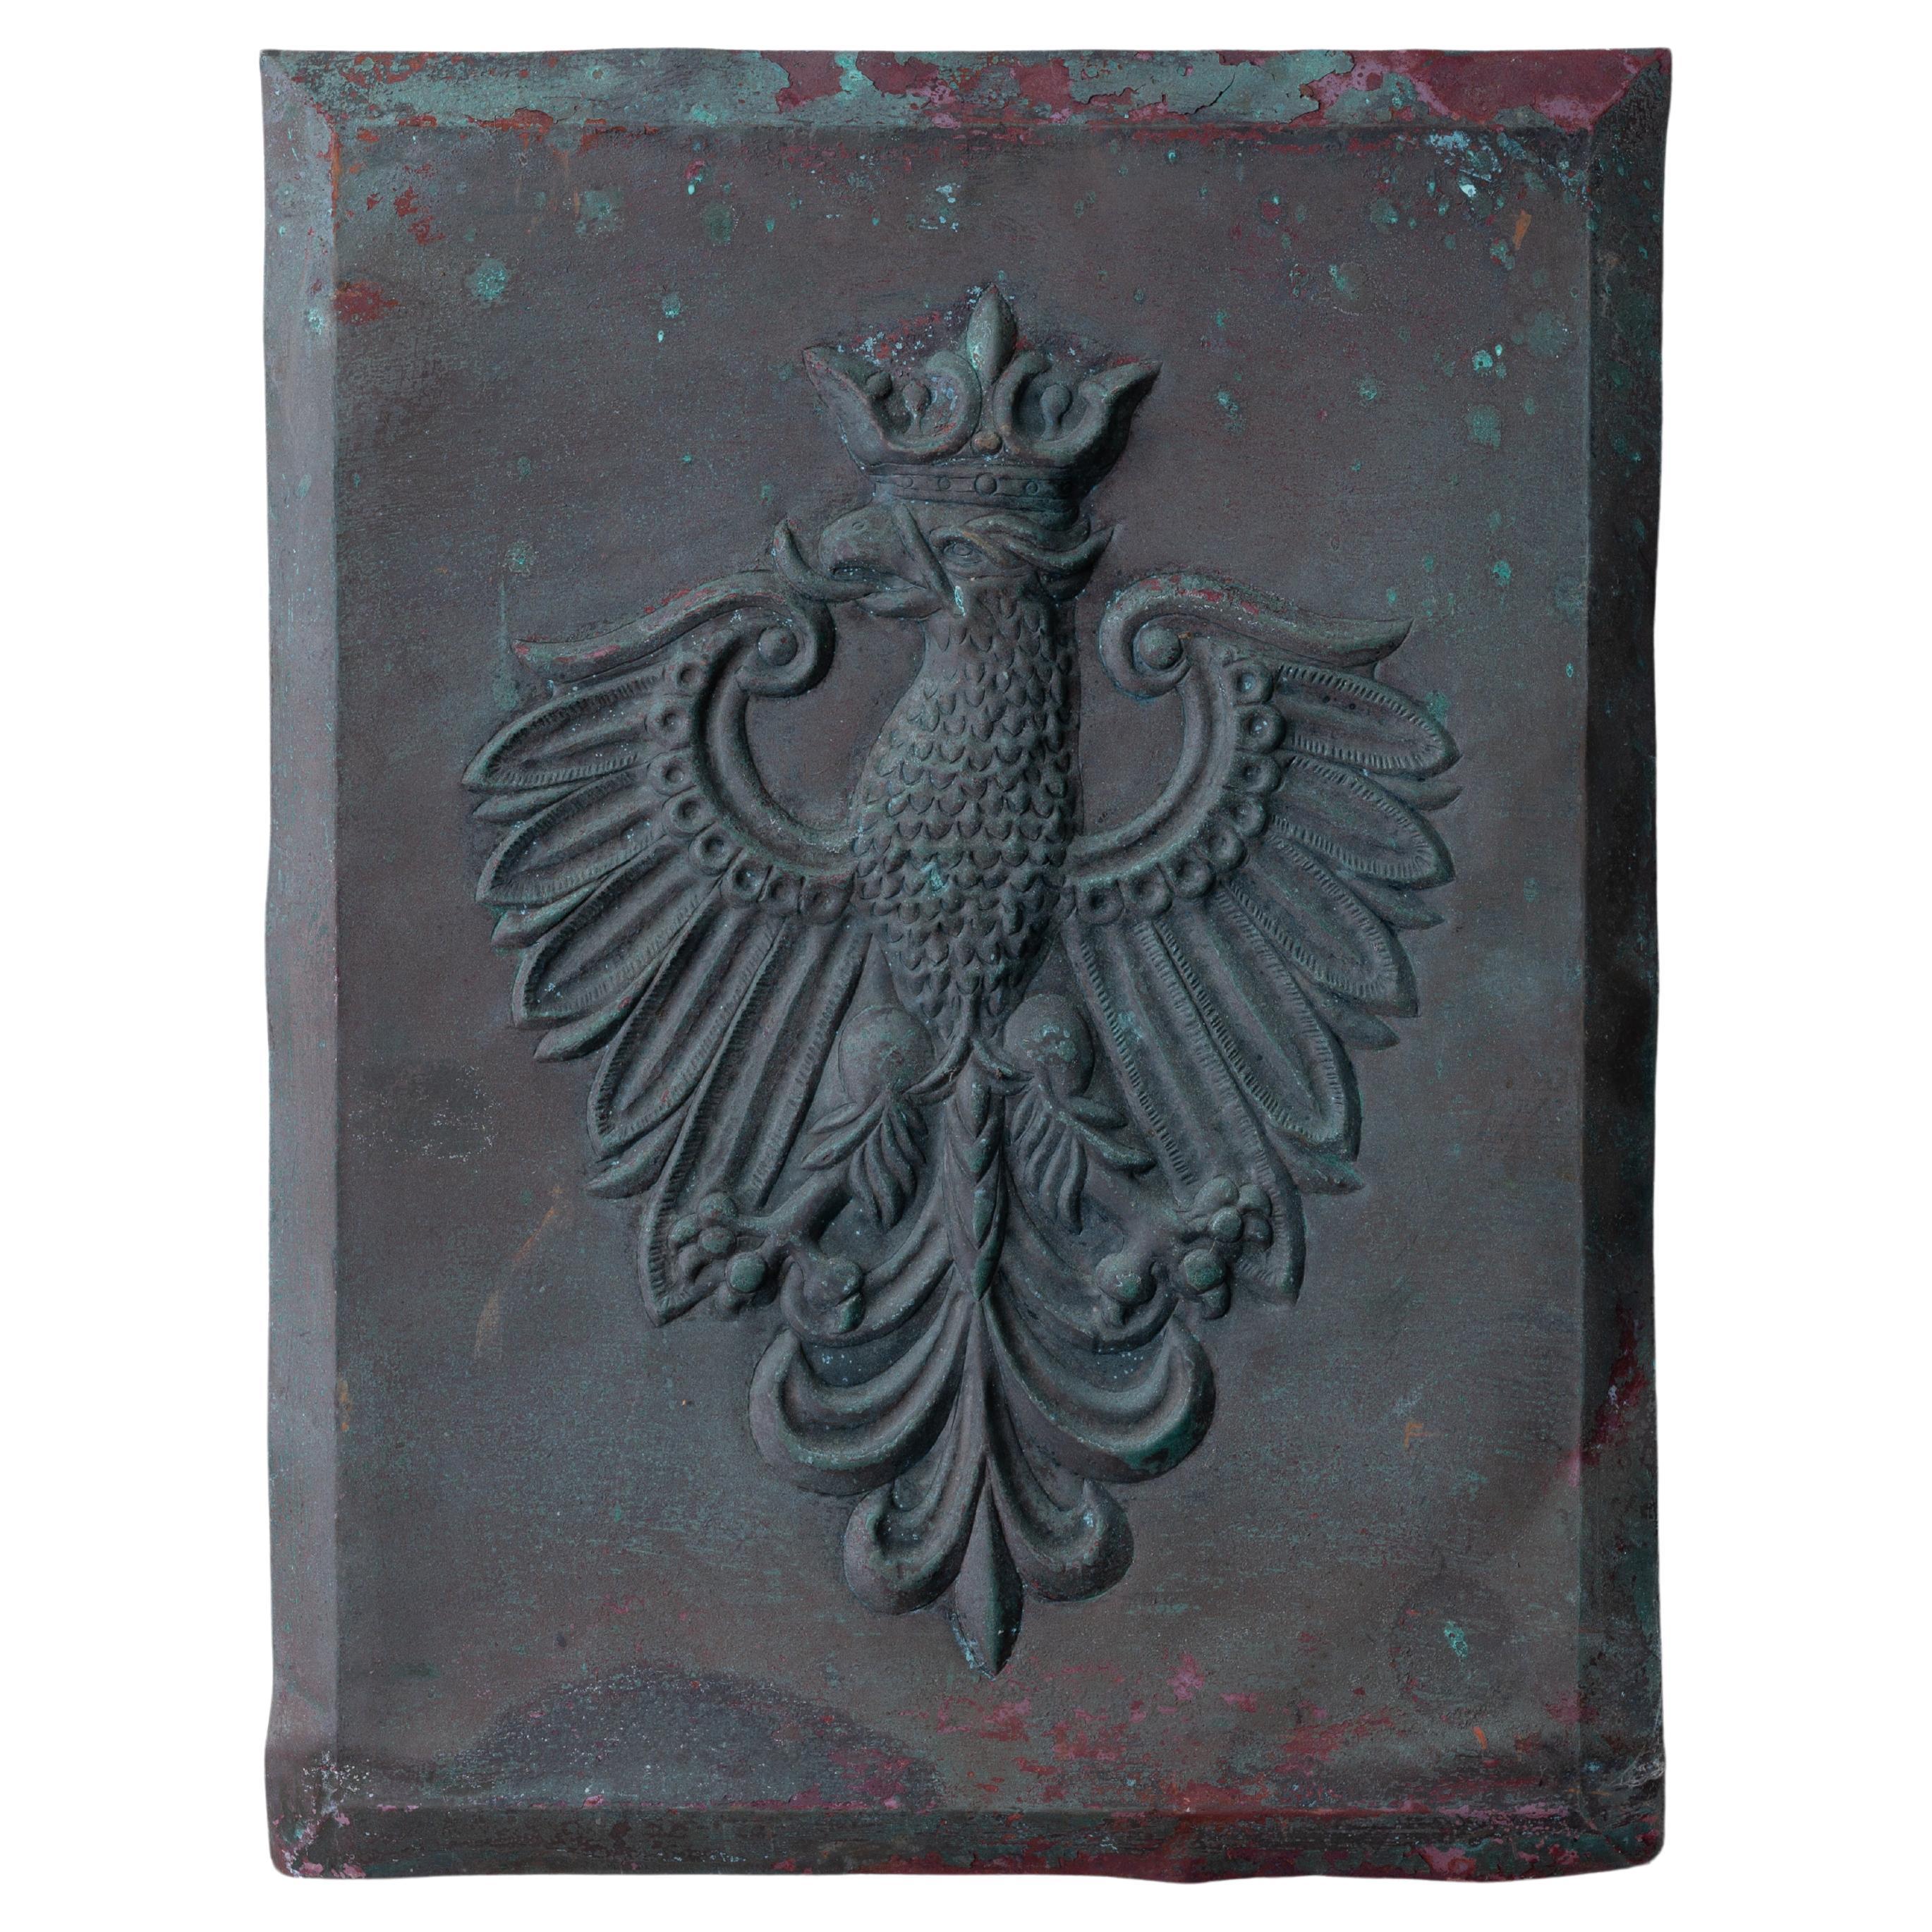 Polnischer Wappenmantel, Kupferreliefplakette mit Wappen